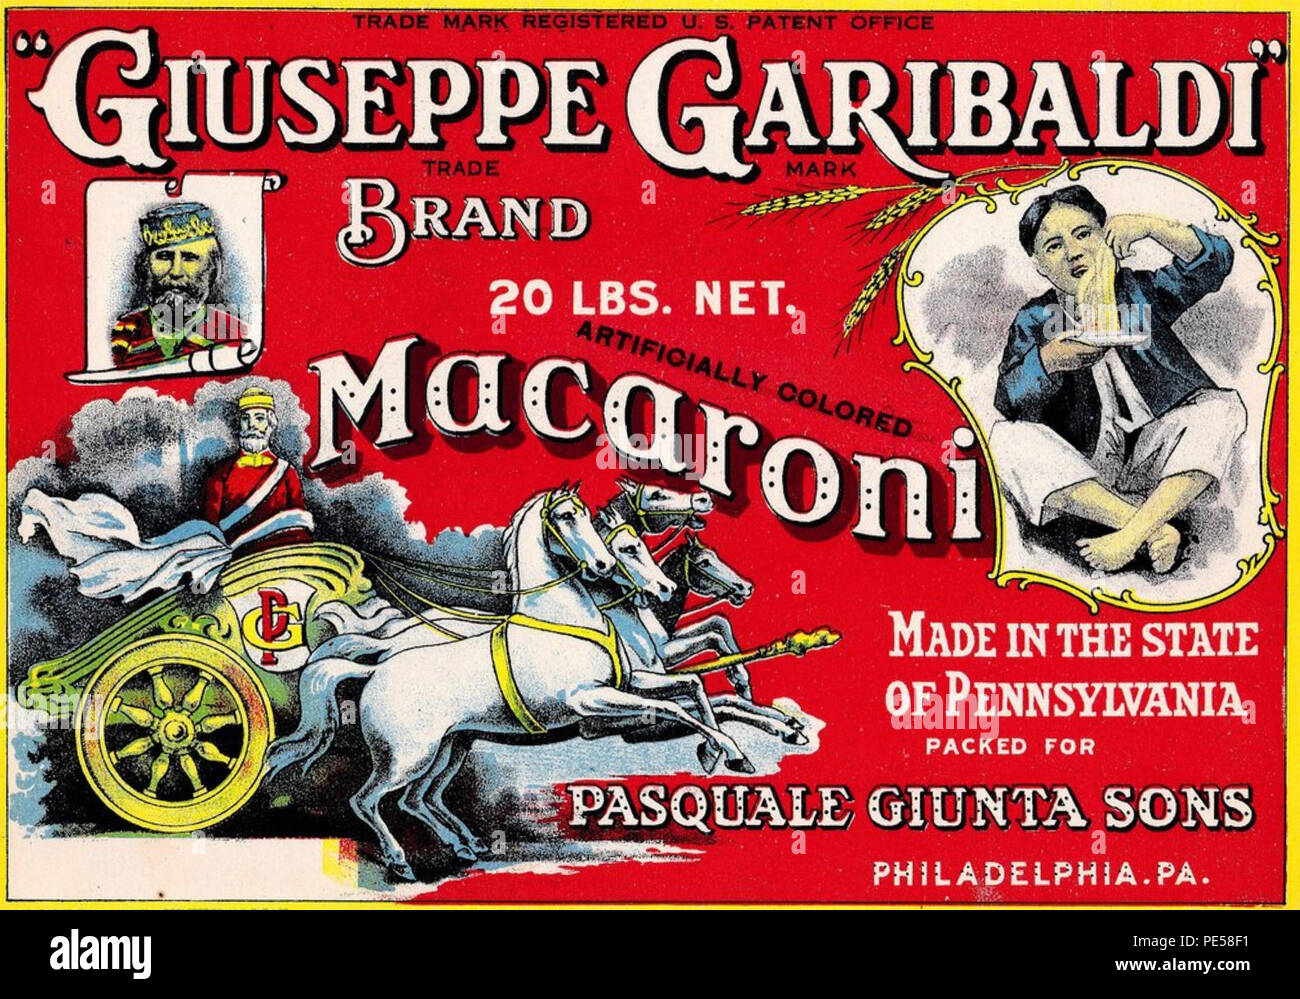 Maccheroni un tardo XIX secolo brand americano di pasta sfruttando la popolarità di Garibaldi, specialmente tra gli immigrati italiani, Foto Stock